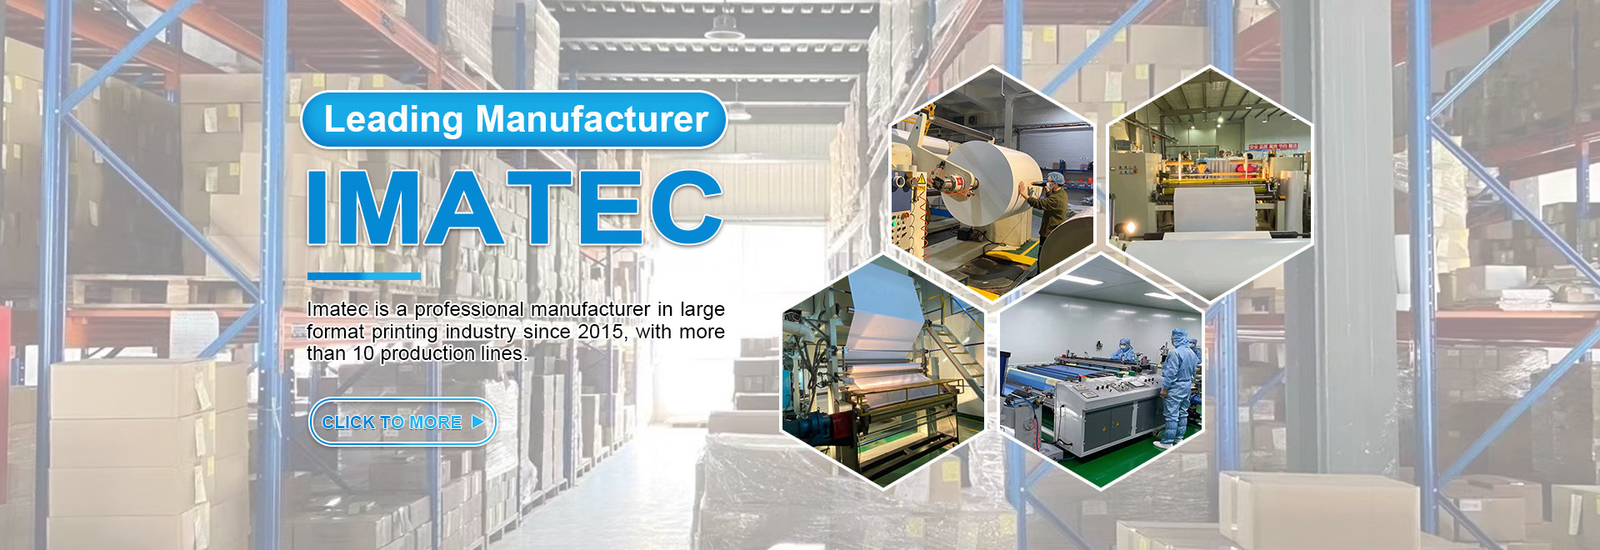 Imatec Imaging Co., Ltd. nhà sản xuất dây chuyền sản xuất